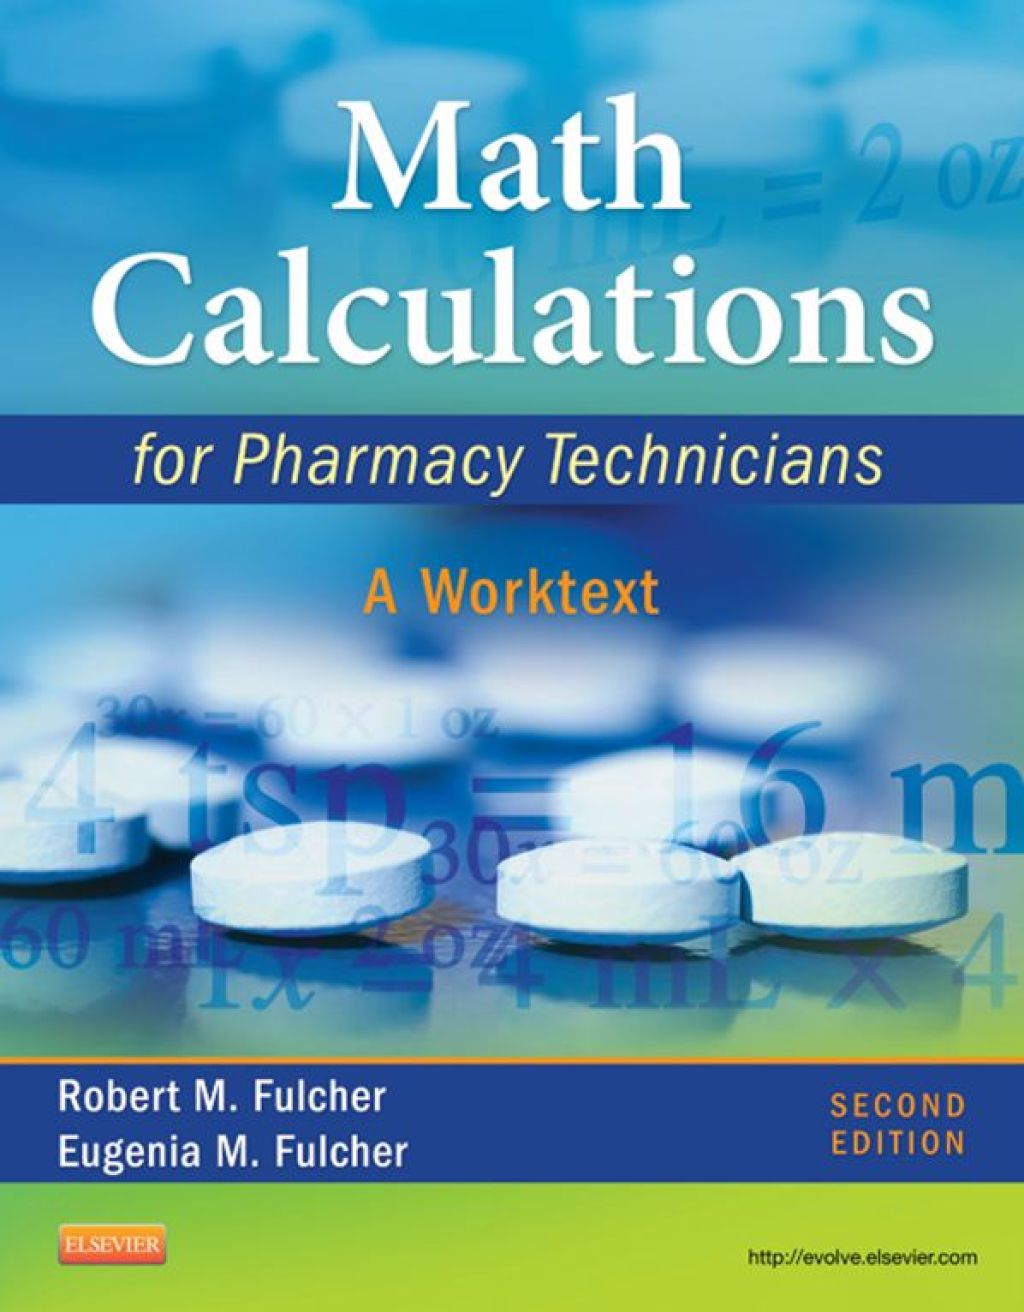 Math Calculations for Pharmacy Technicians: A Worktext (eBook Rental)